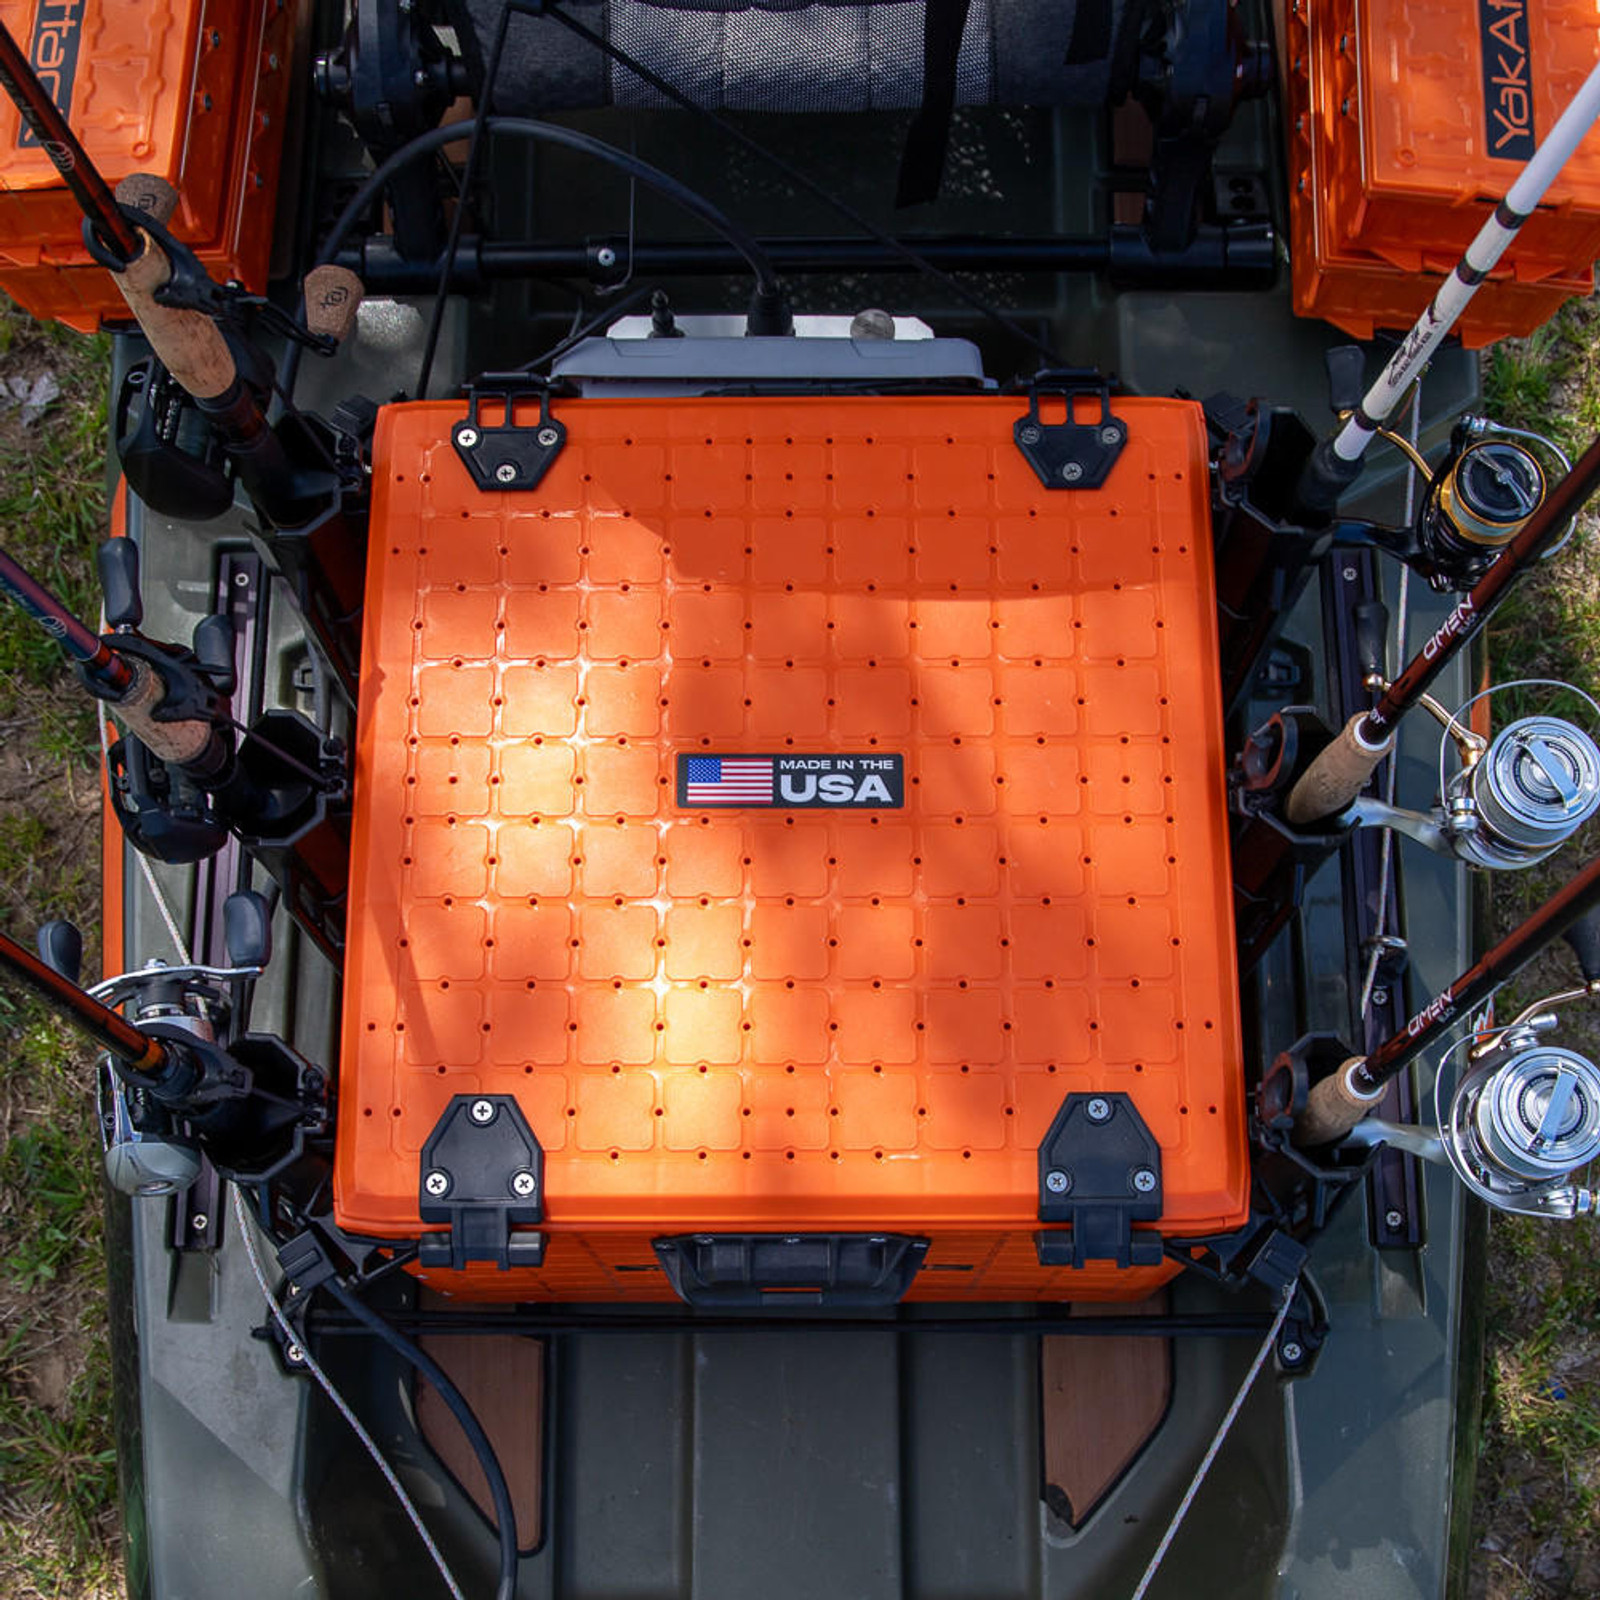  BlackPak Pro Kayak Fishing Crate - 16" x 16", Orange 